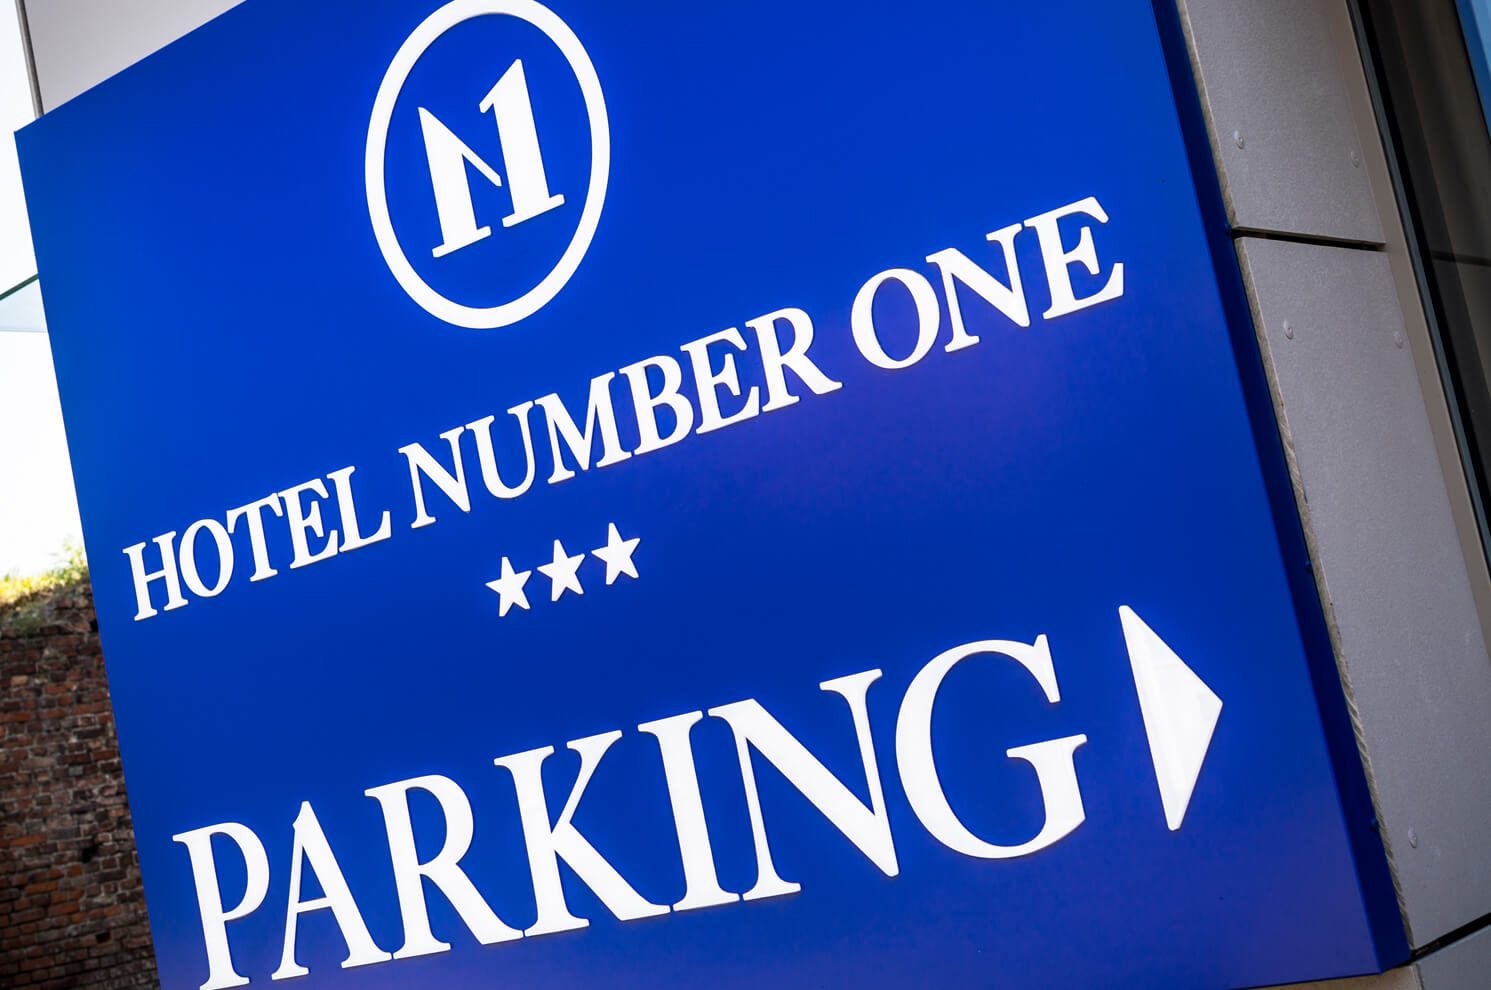 Hotel Number 1 - Hotel Number 1 - litery przestrzenne na kasetonie świetlnym